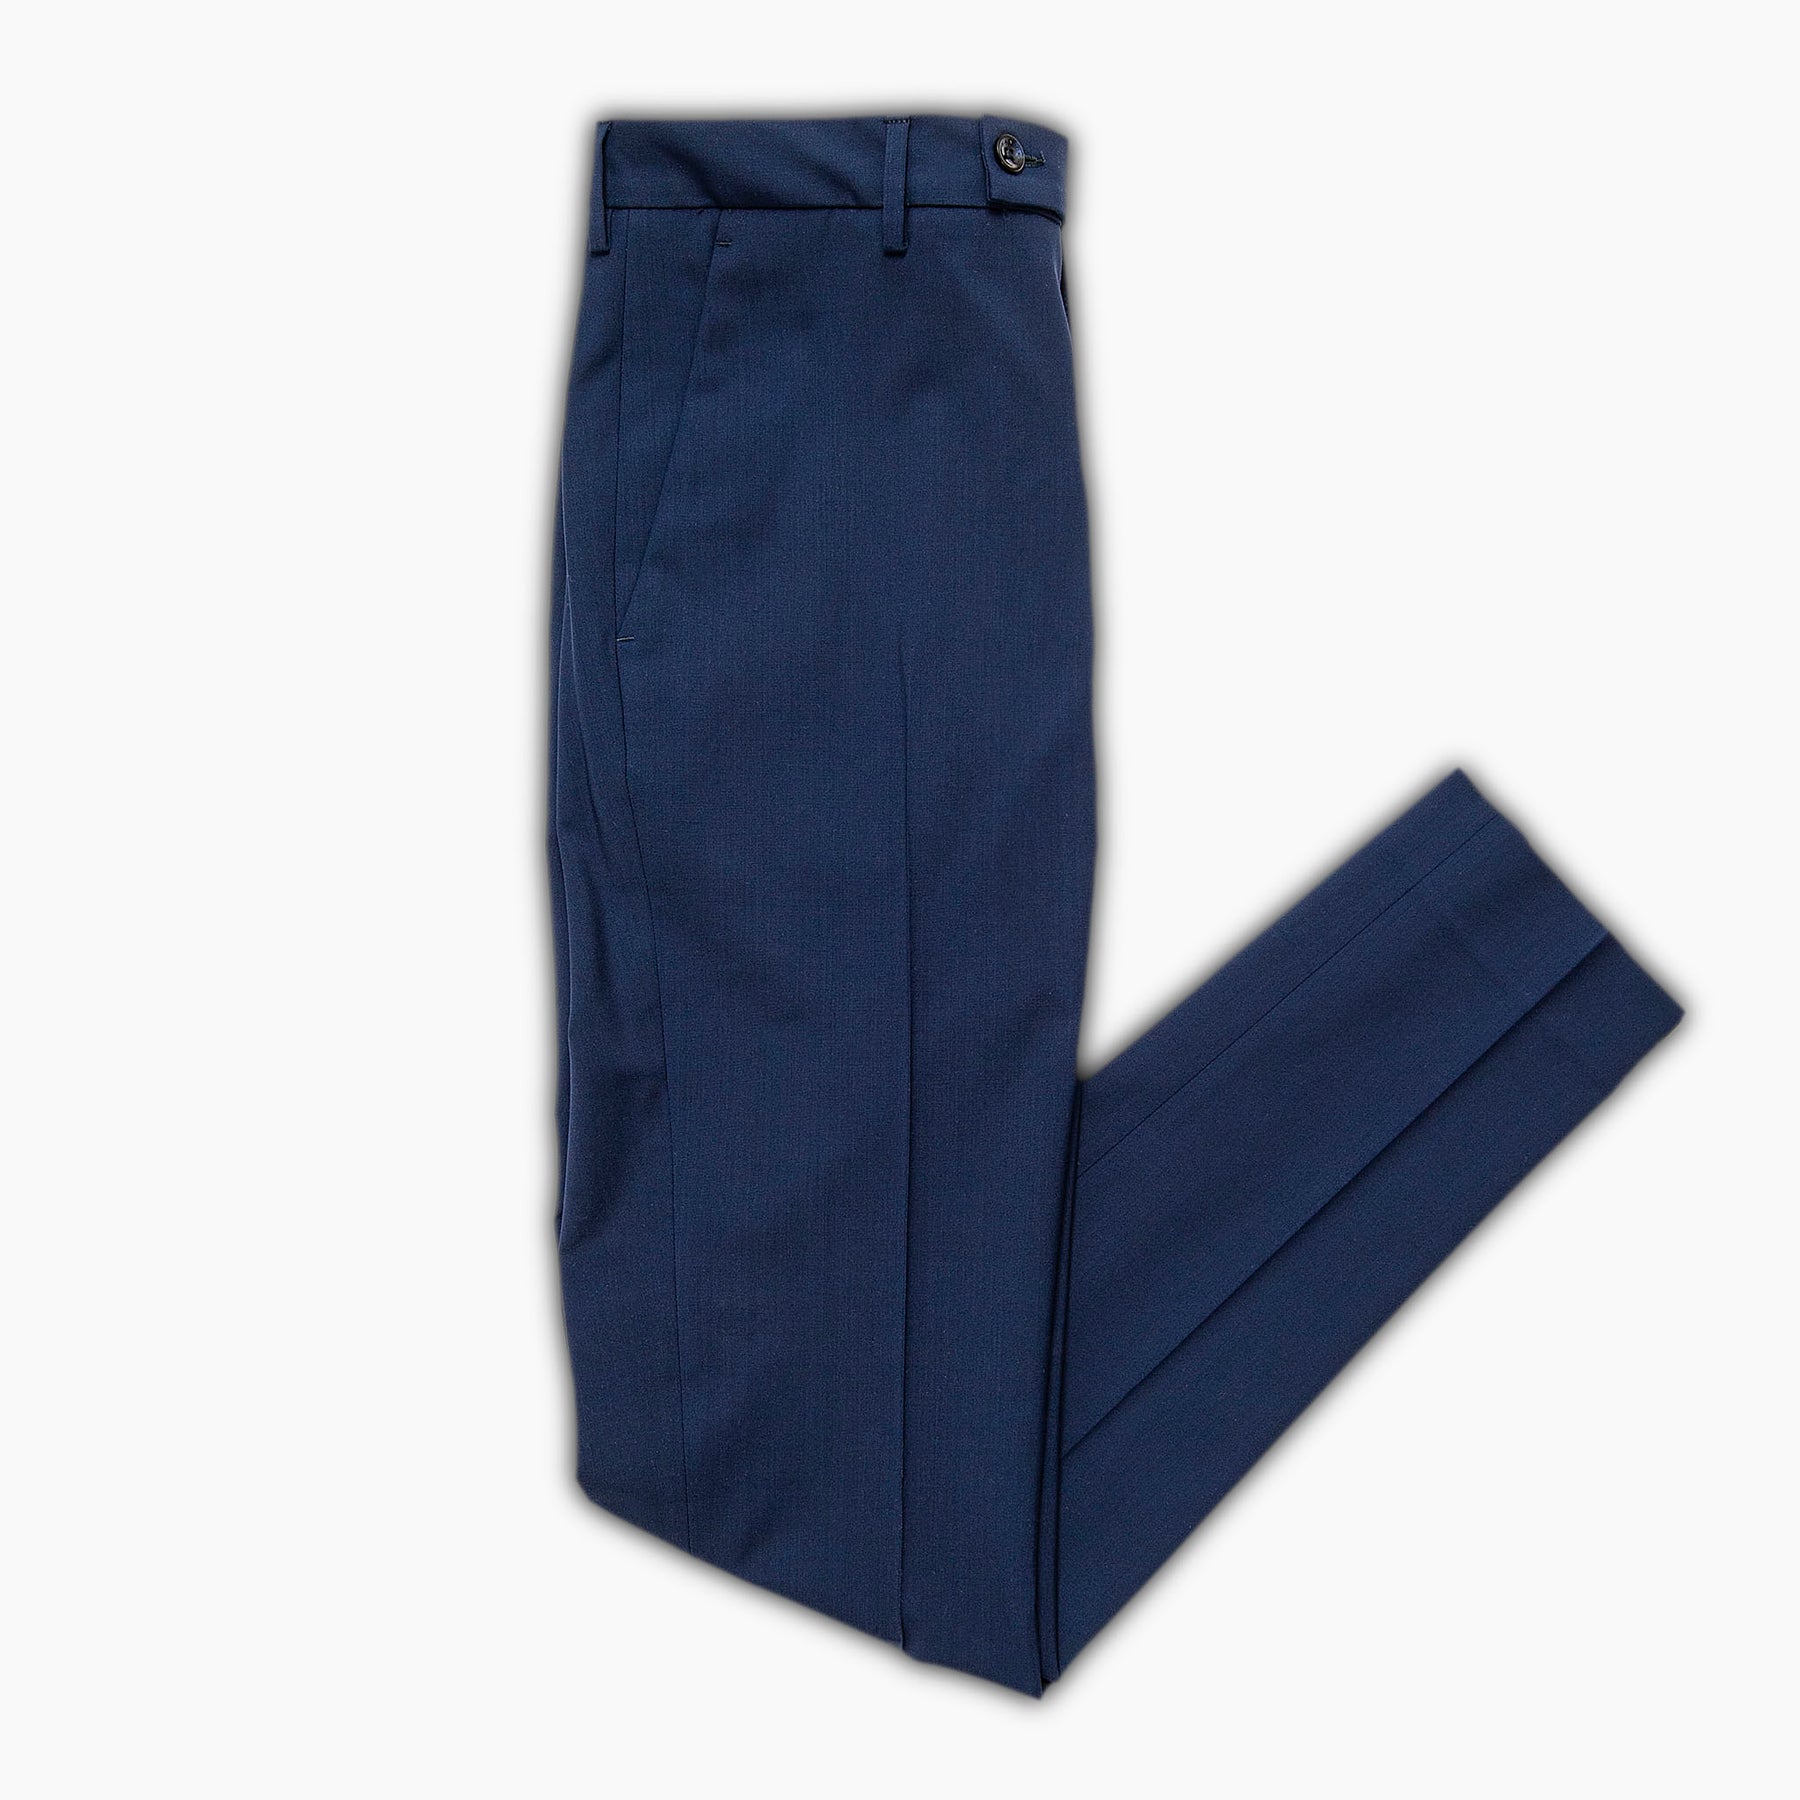 dark blue chino pants